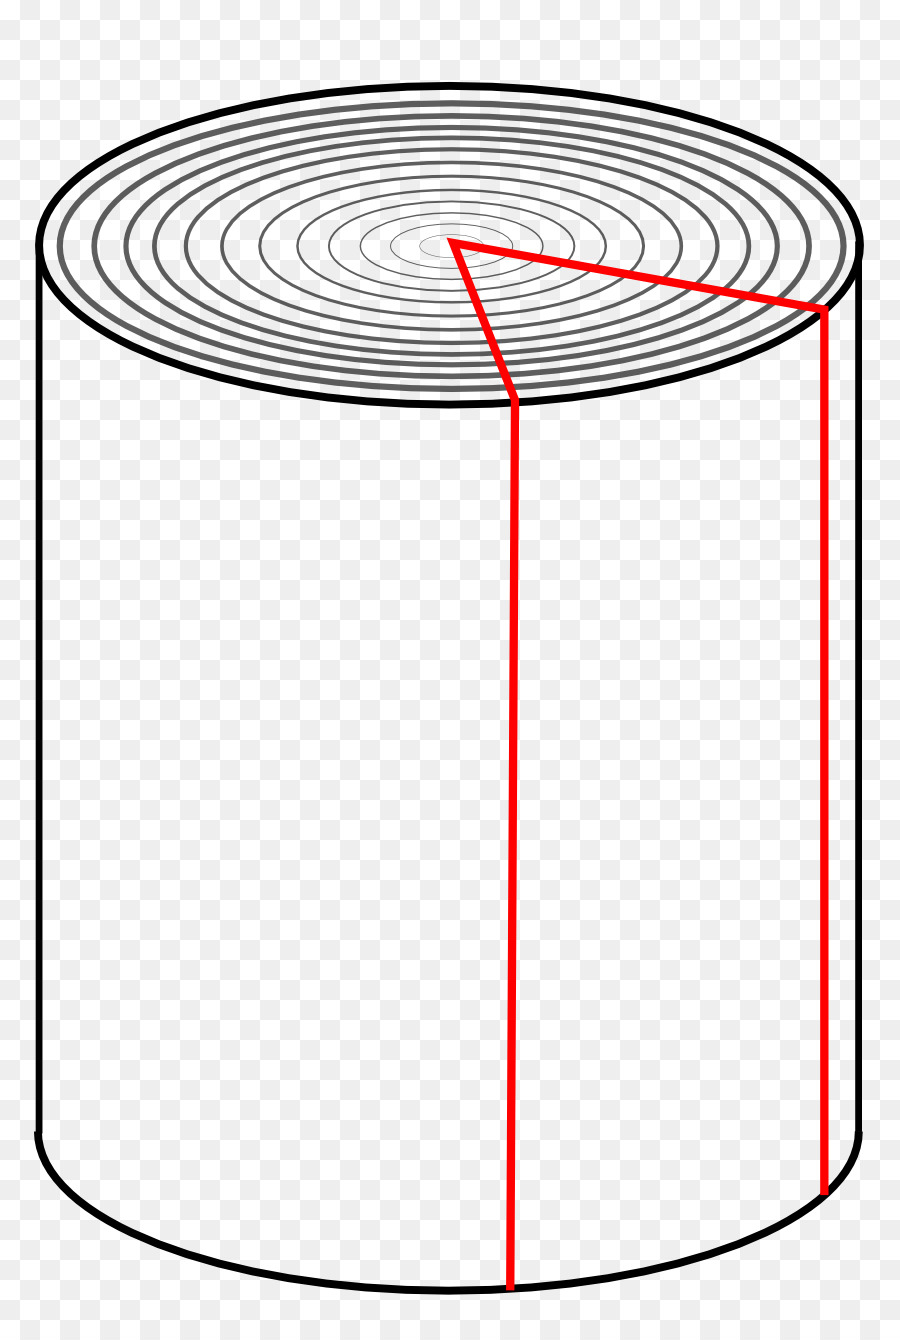 /m/02csf Logik der Möglichkeit der Öl-Dunkel-Muster - radiale Linien